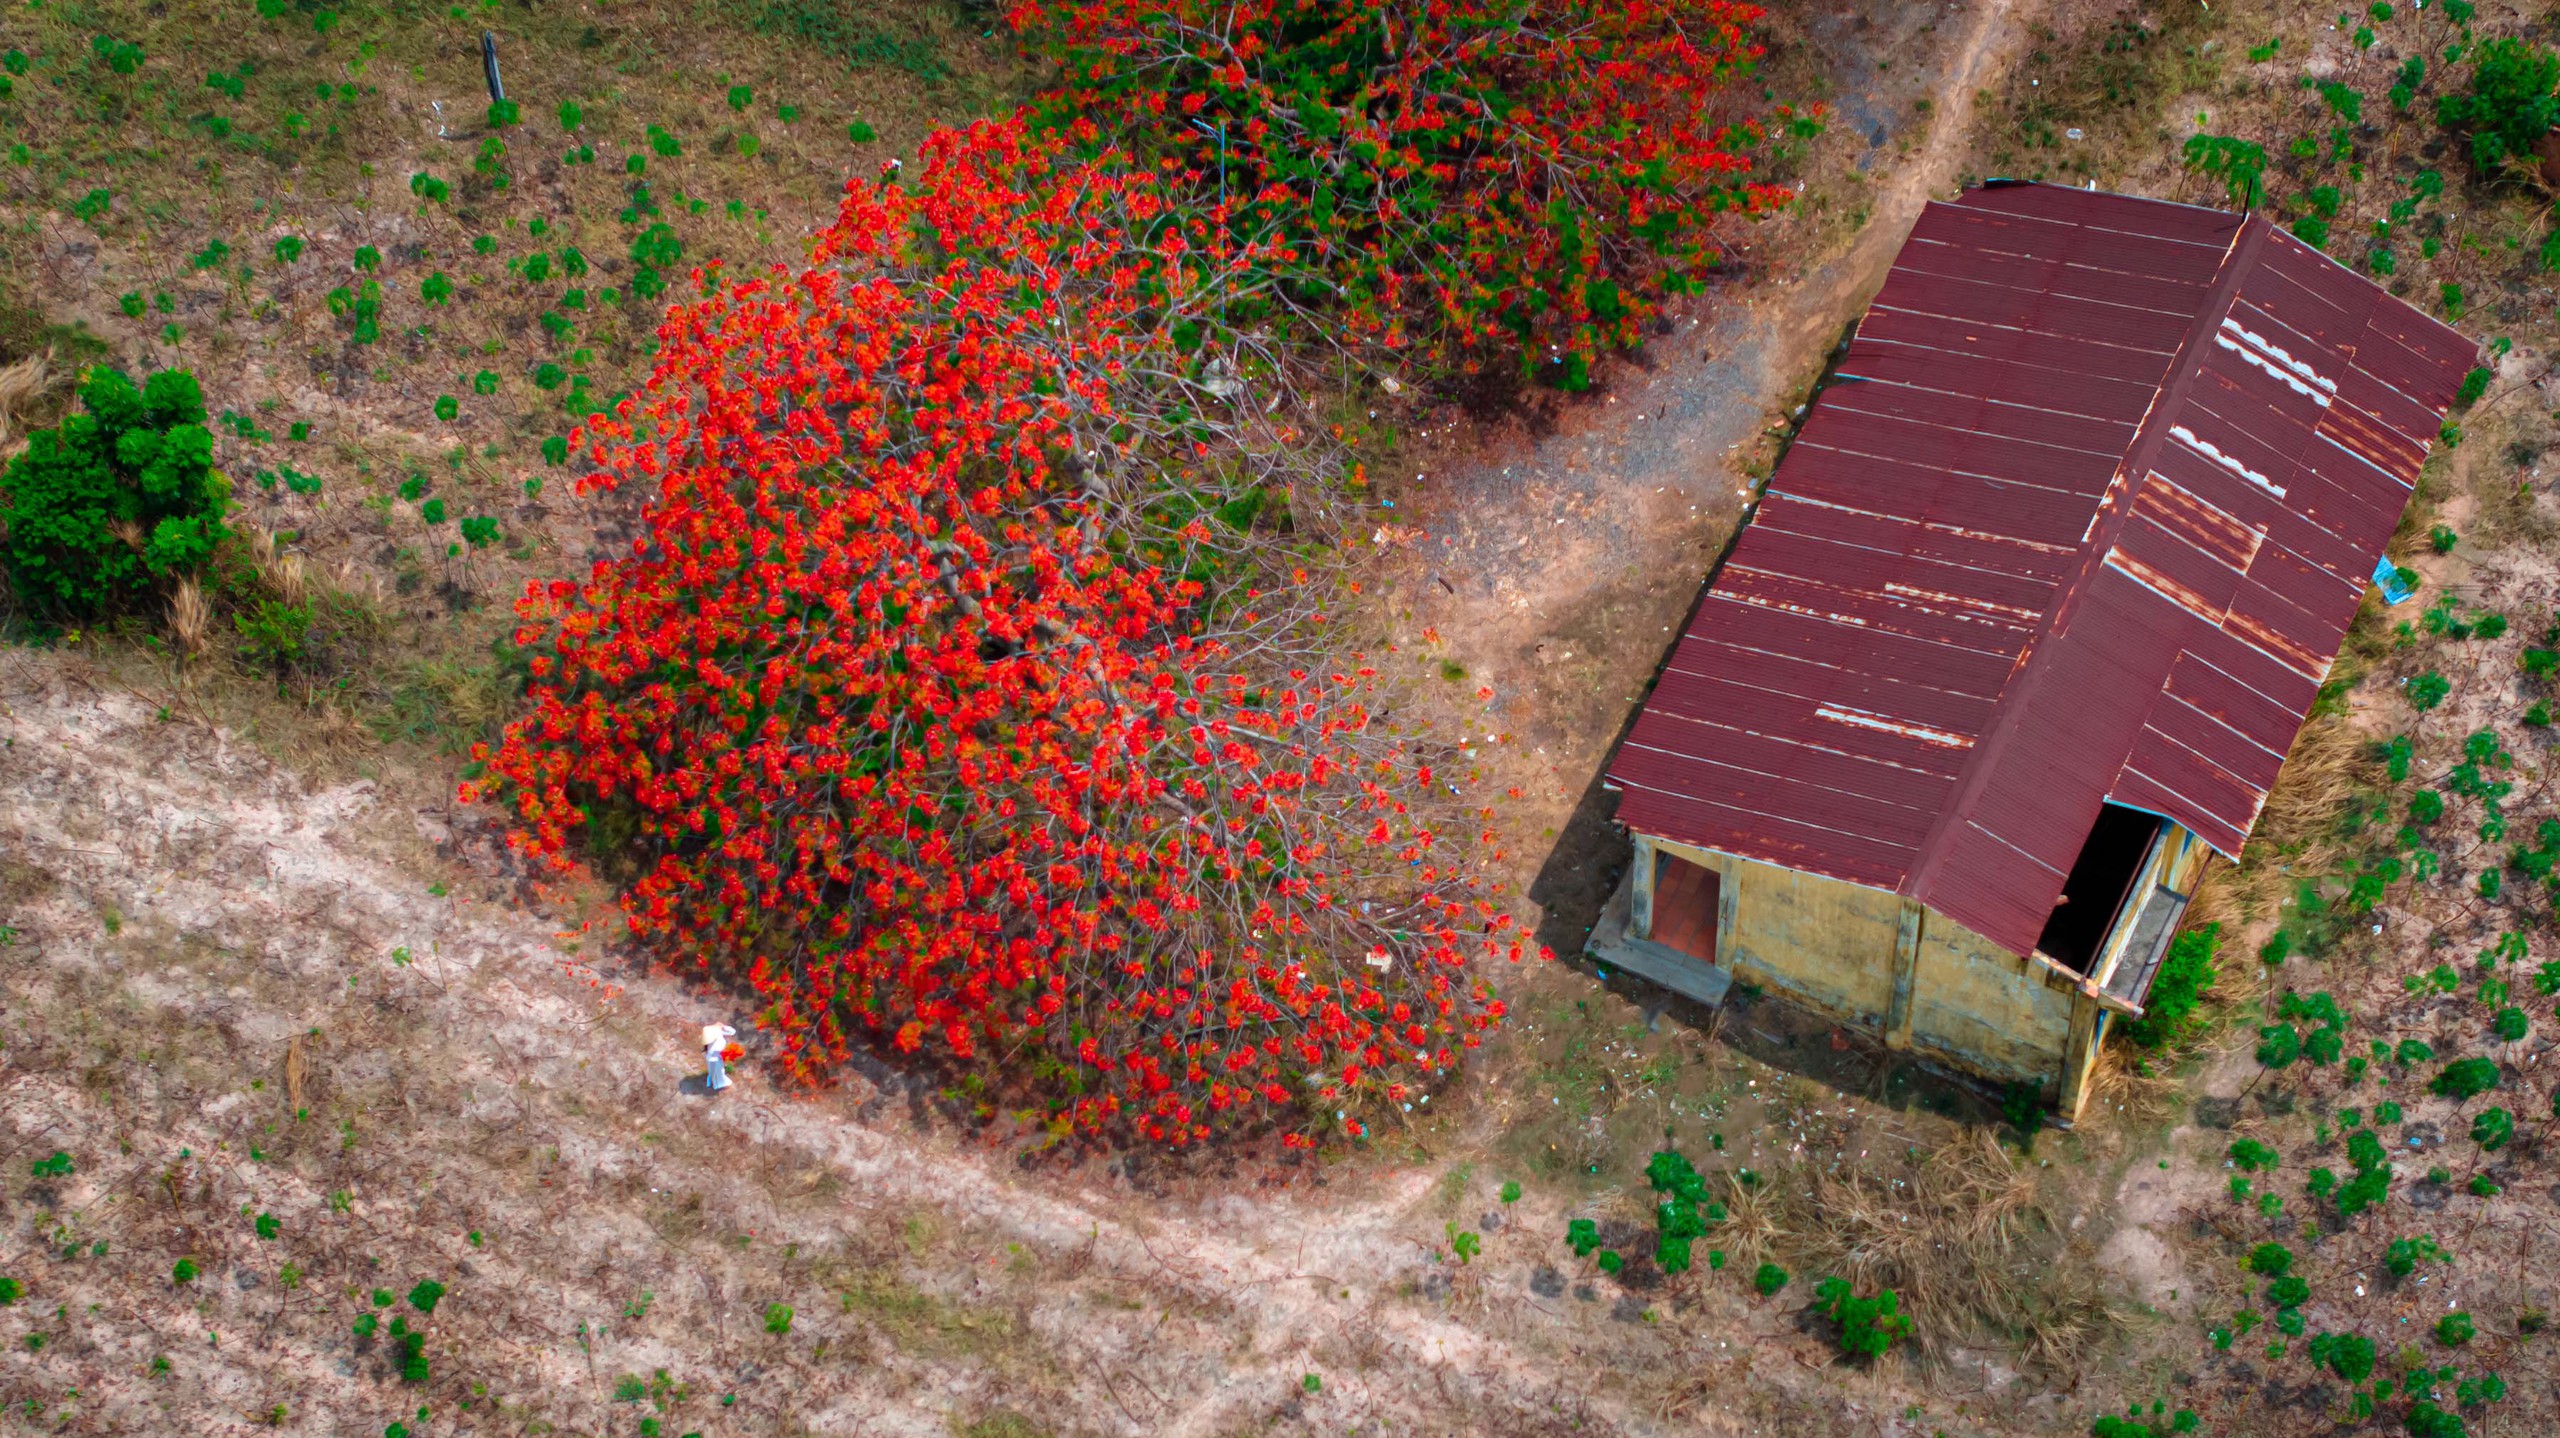 Phượng vĩ có ở khắp nơi trên đất nước Việt Nam, được trồng thành hàng hai bên những con đường ở miền Tây, trong trường học hay thành phố hoa phượng đỏ Hải Phòng. Loài hoa quen thuộc này chưa bao giờ hết đẹp, bởi được gắn với những hoài niệm của thời rực rỡ nhất - tuổi học trò